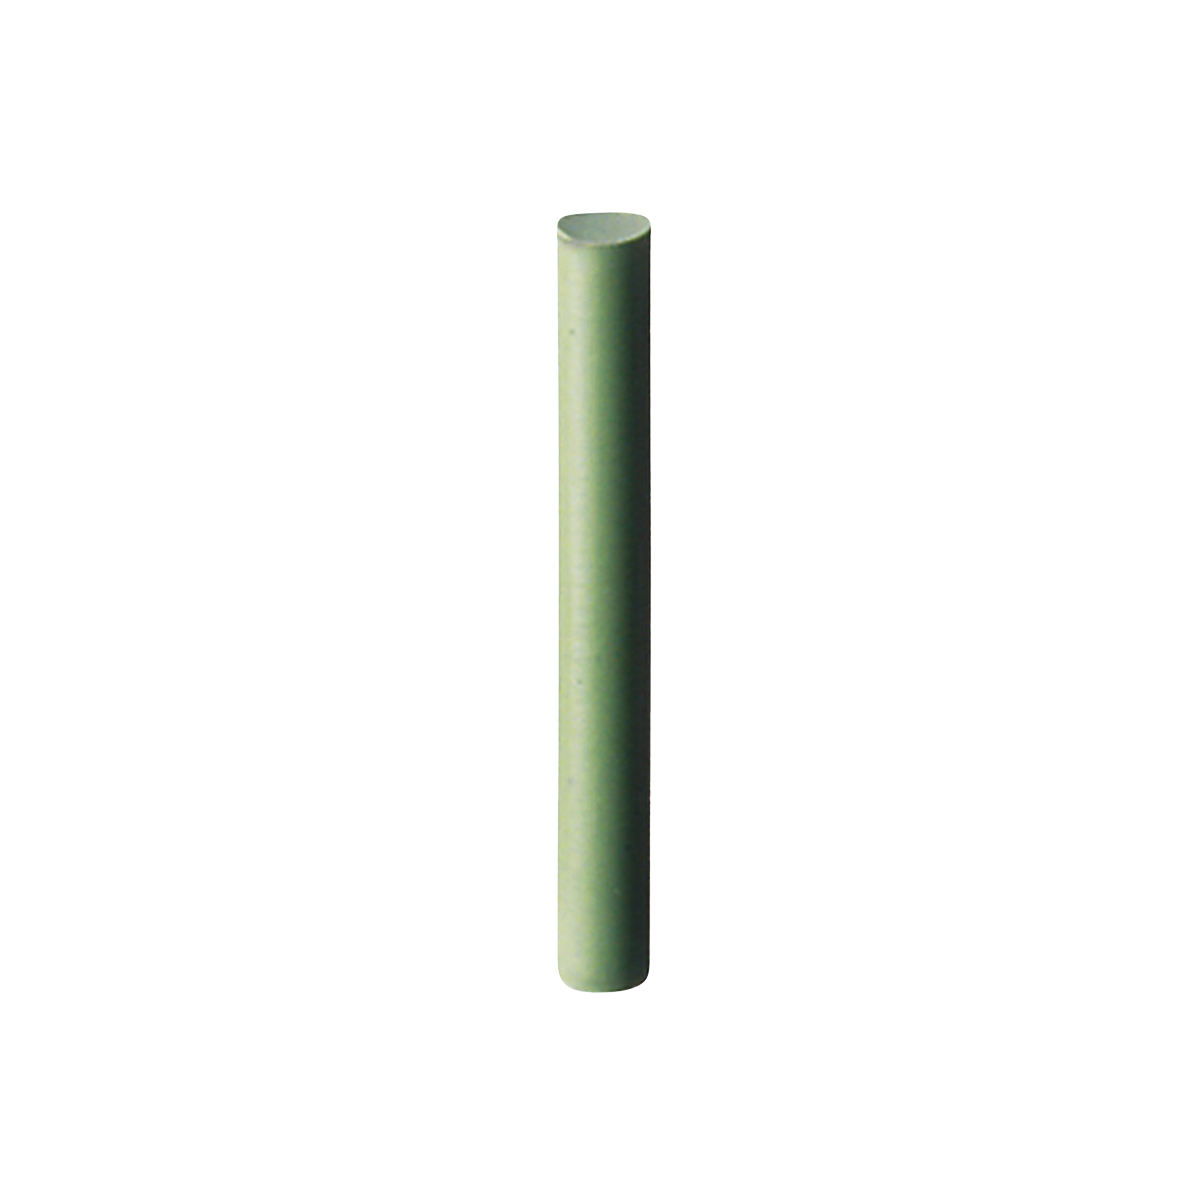 Kauflächenpolierer 22 mm, fein, Grün